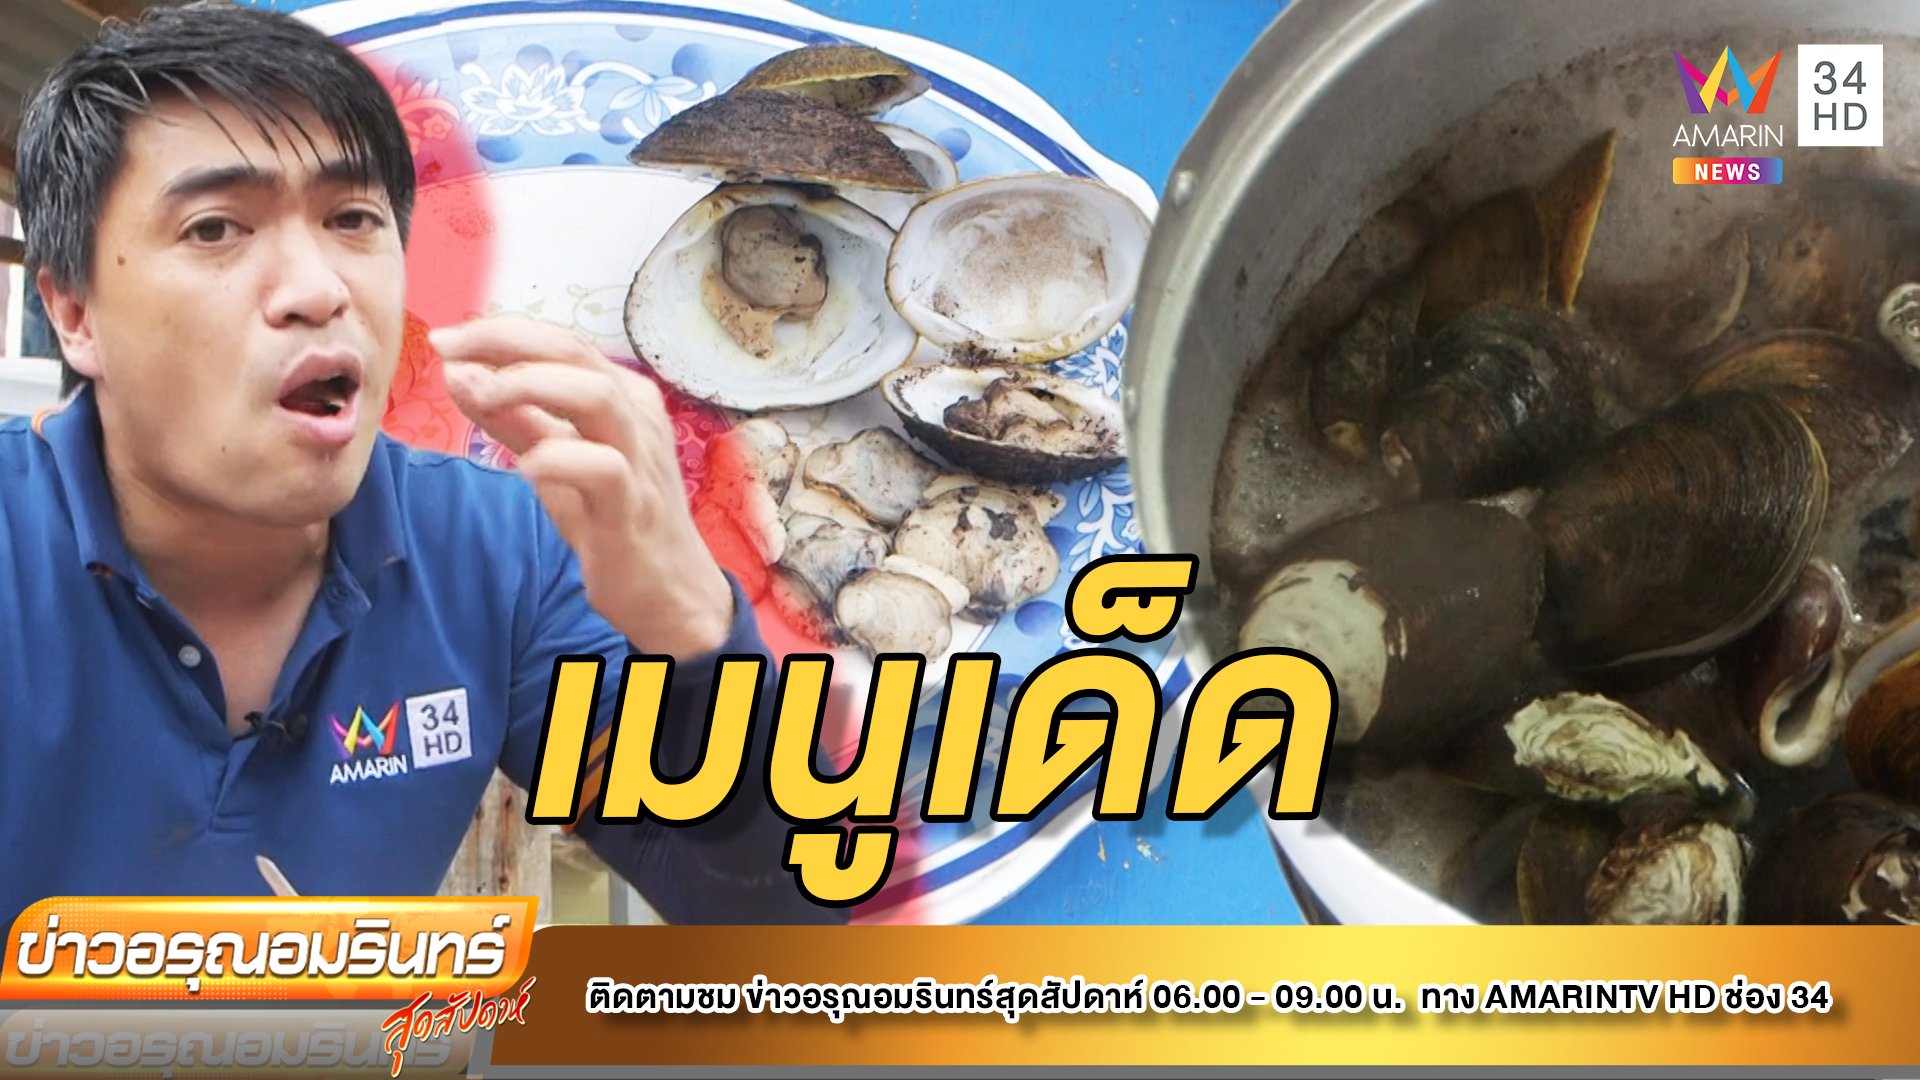 ดีดกับดนย์ |EP.4| ตามหา หอยฉลอง หอยพอก ของอร่อยบ้านท่าระแนะ | ข่าวอรุณอมรินทร์ | 14 พ.ค. 65 | AMARIN TVHD34